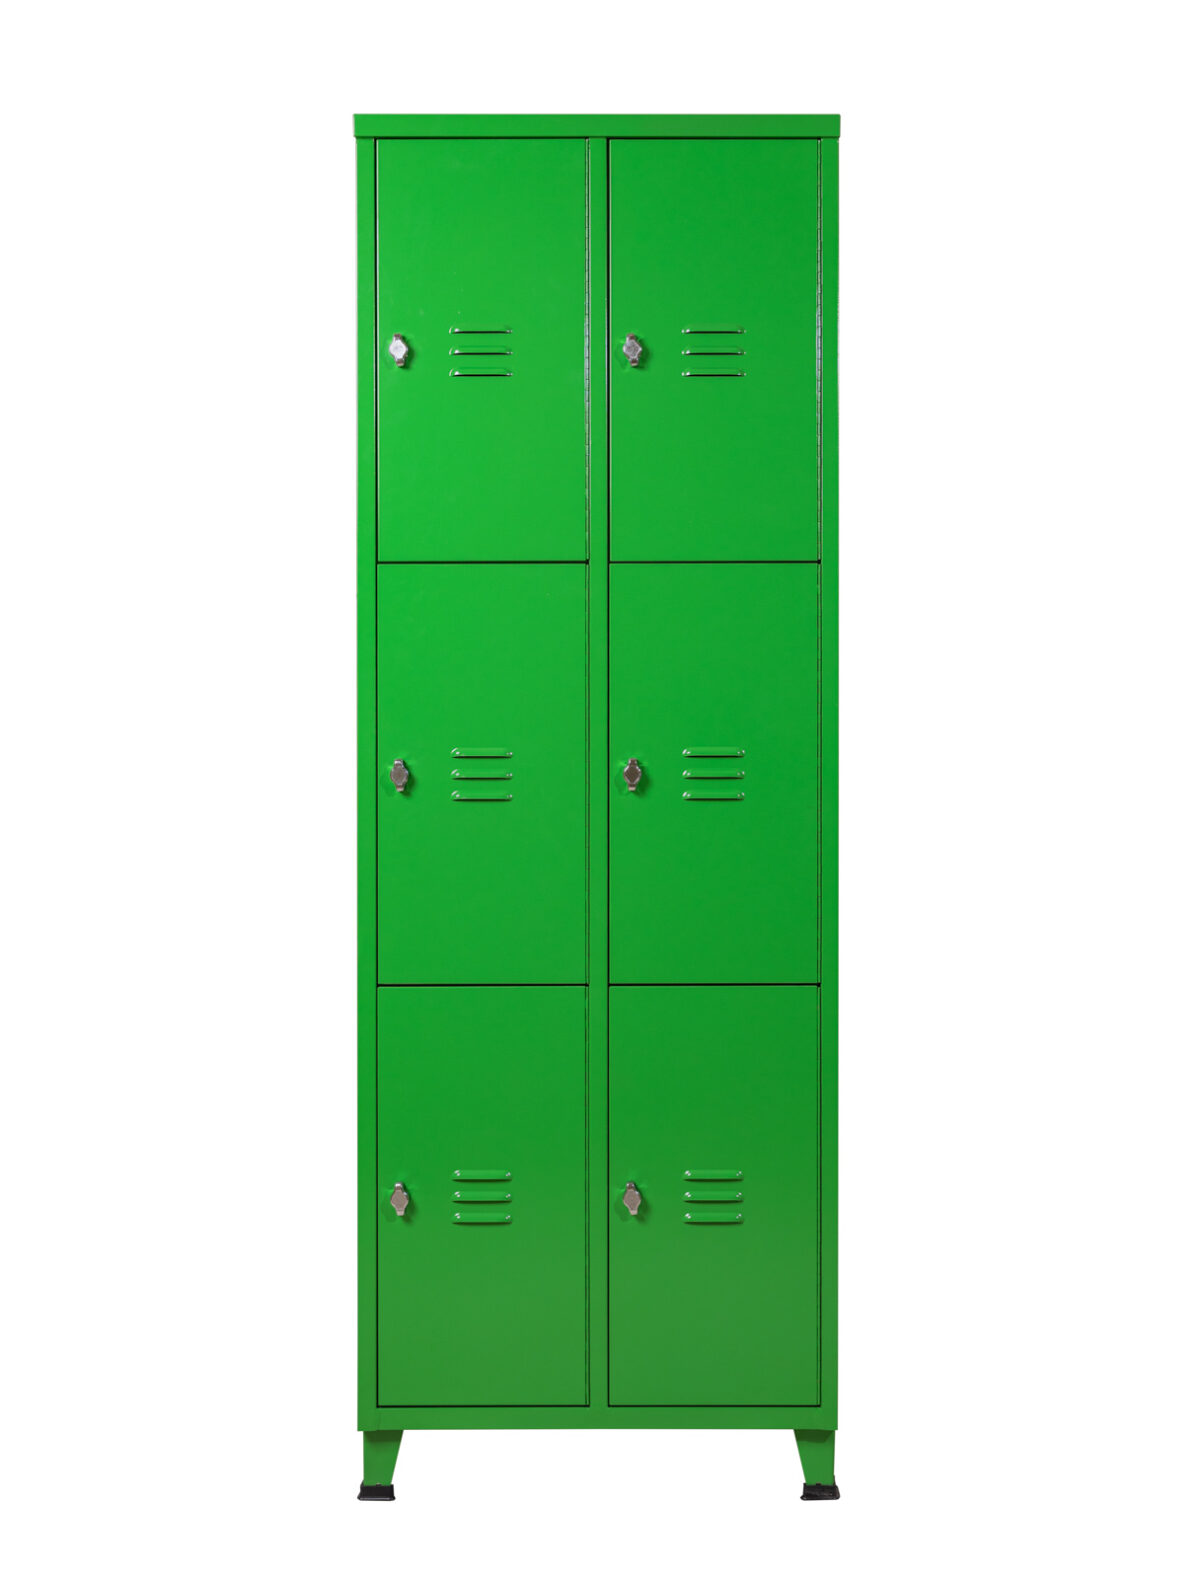 ארון מתכת לוקר 6 תאים ברנדה צבע ירוק